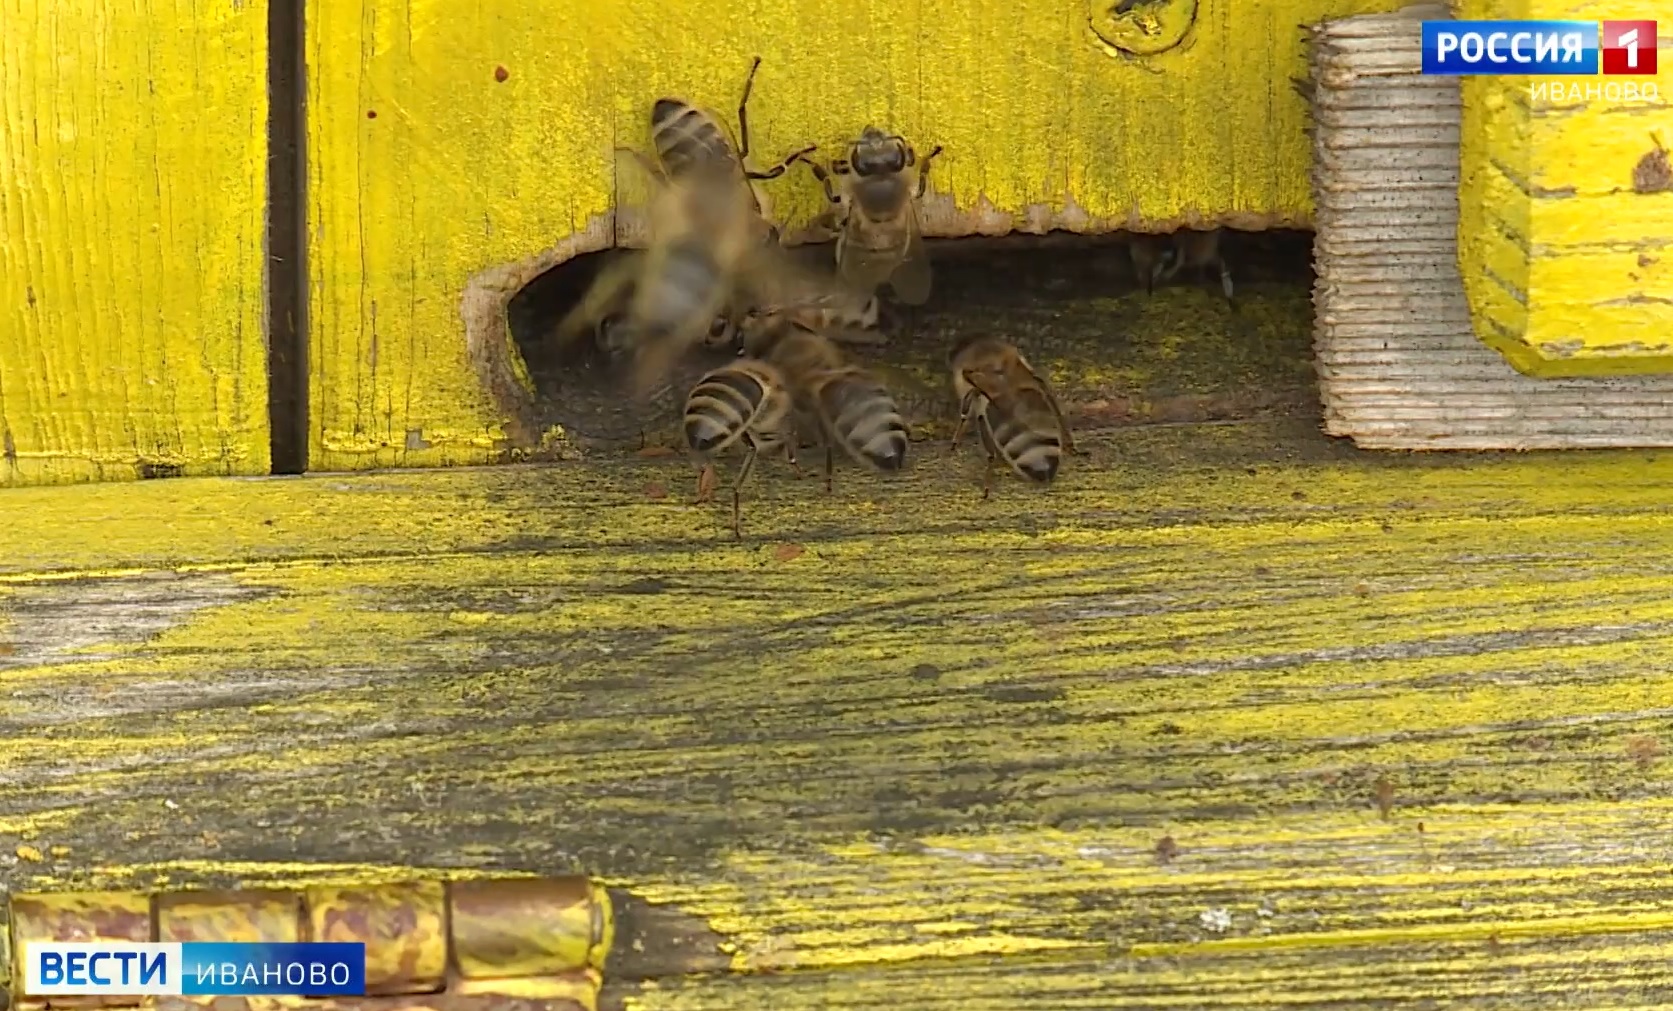 Пчеловодов Ивановского района предупреждают об обработке полей химикатами